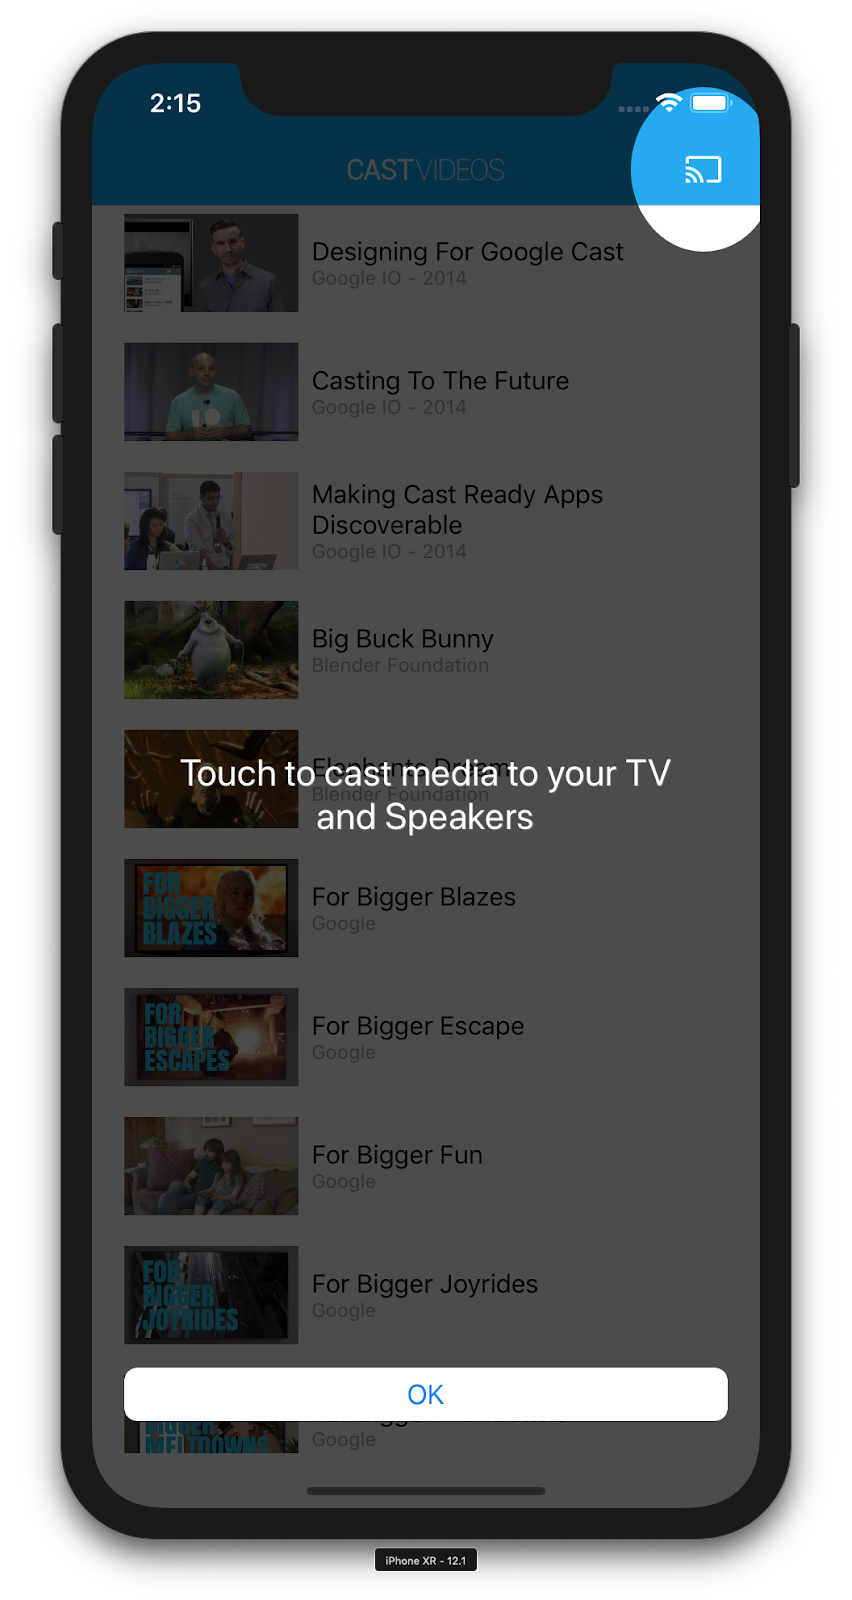 Ilustración de un iPhone ejecutando la app de CastVideos, con el botón para transmitir superpuesto, donde se destaca el botón para transmitir y se muestra el mensaje &quot;Touch to cast media to your TV and Speakers&quot;